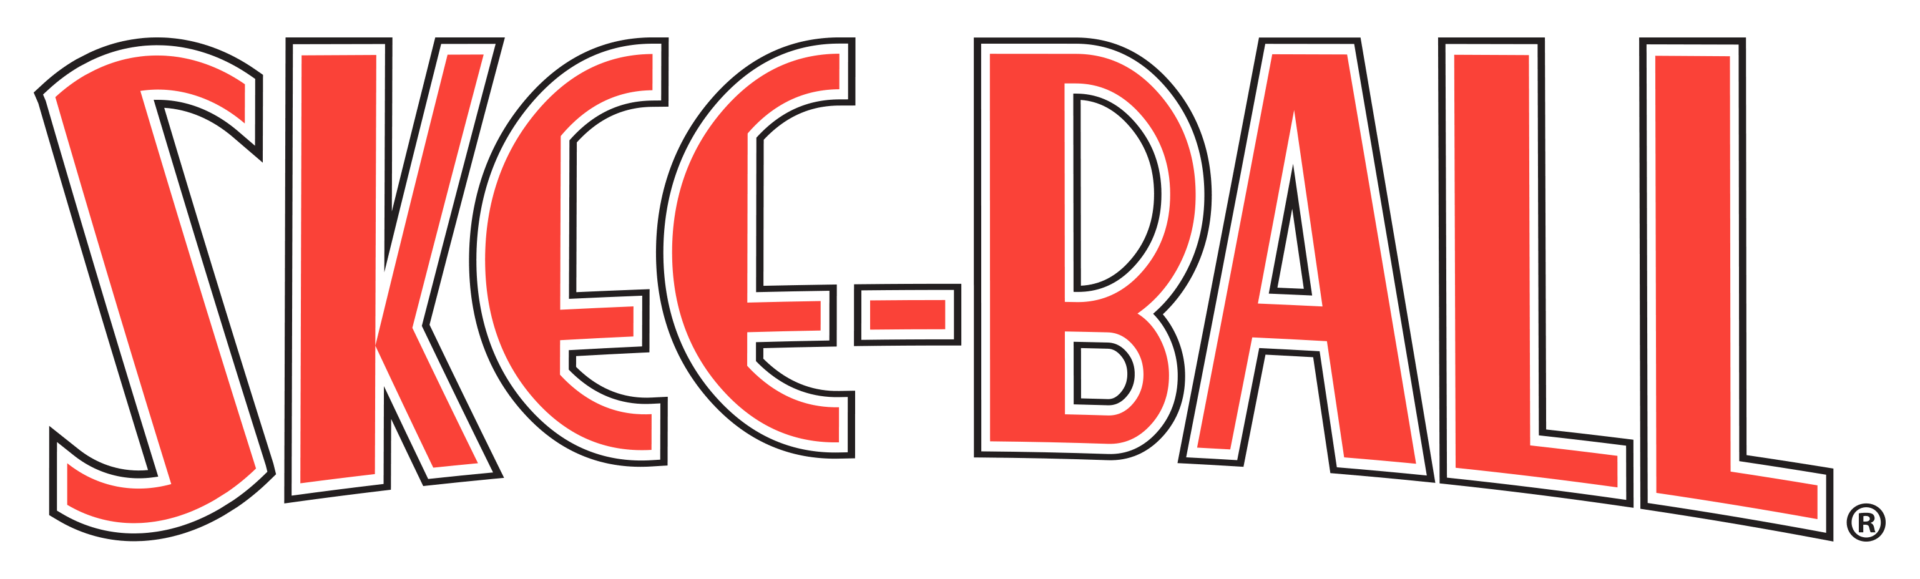 2018-Skee-Ball-logo.png